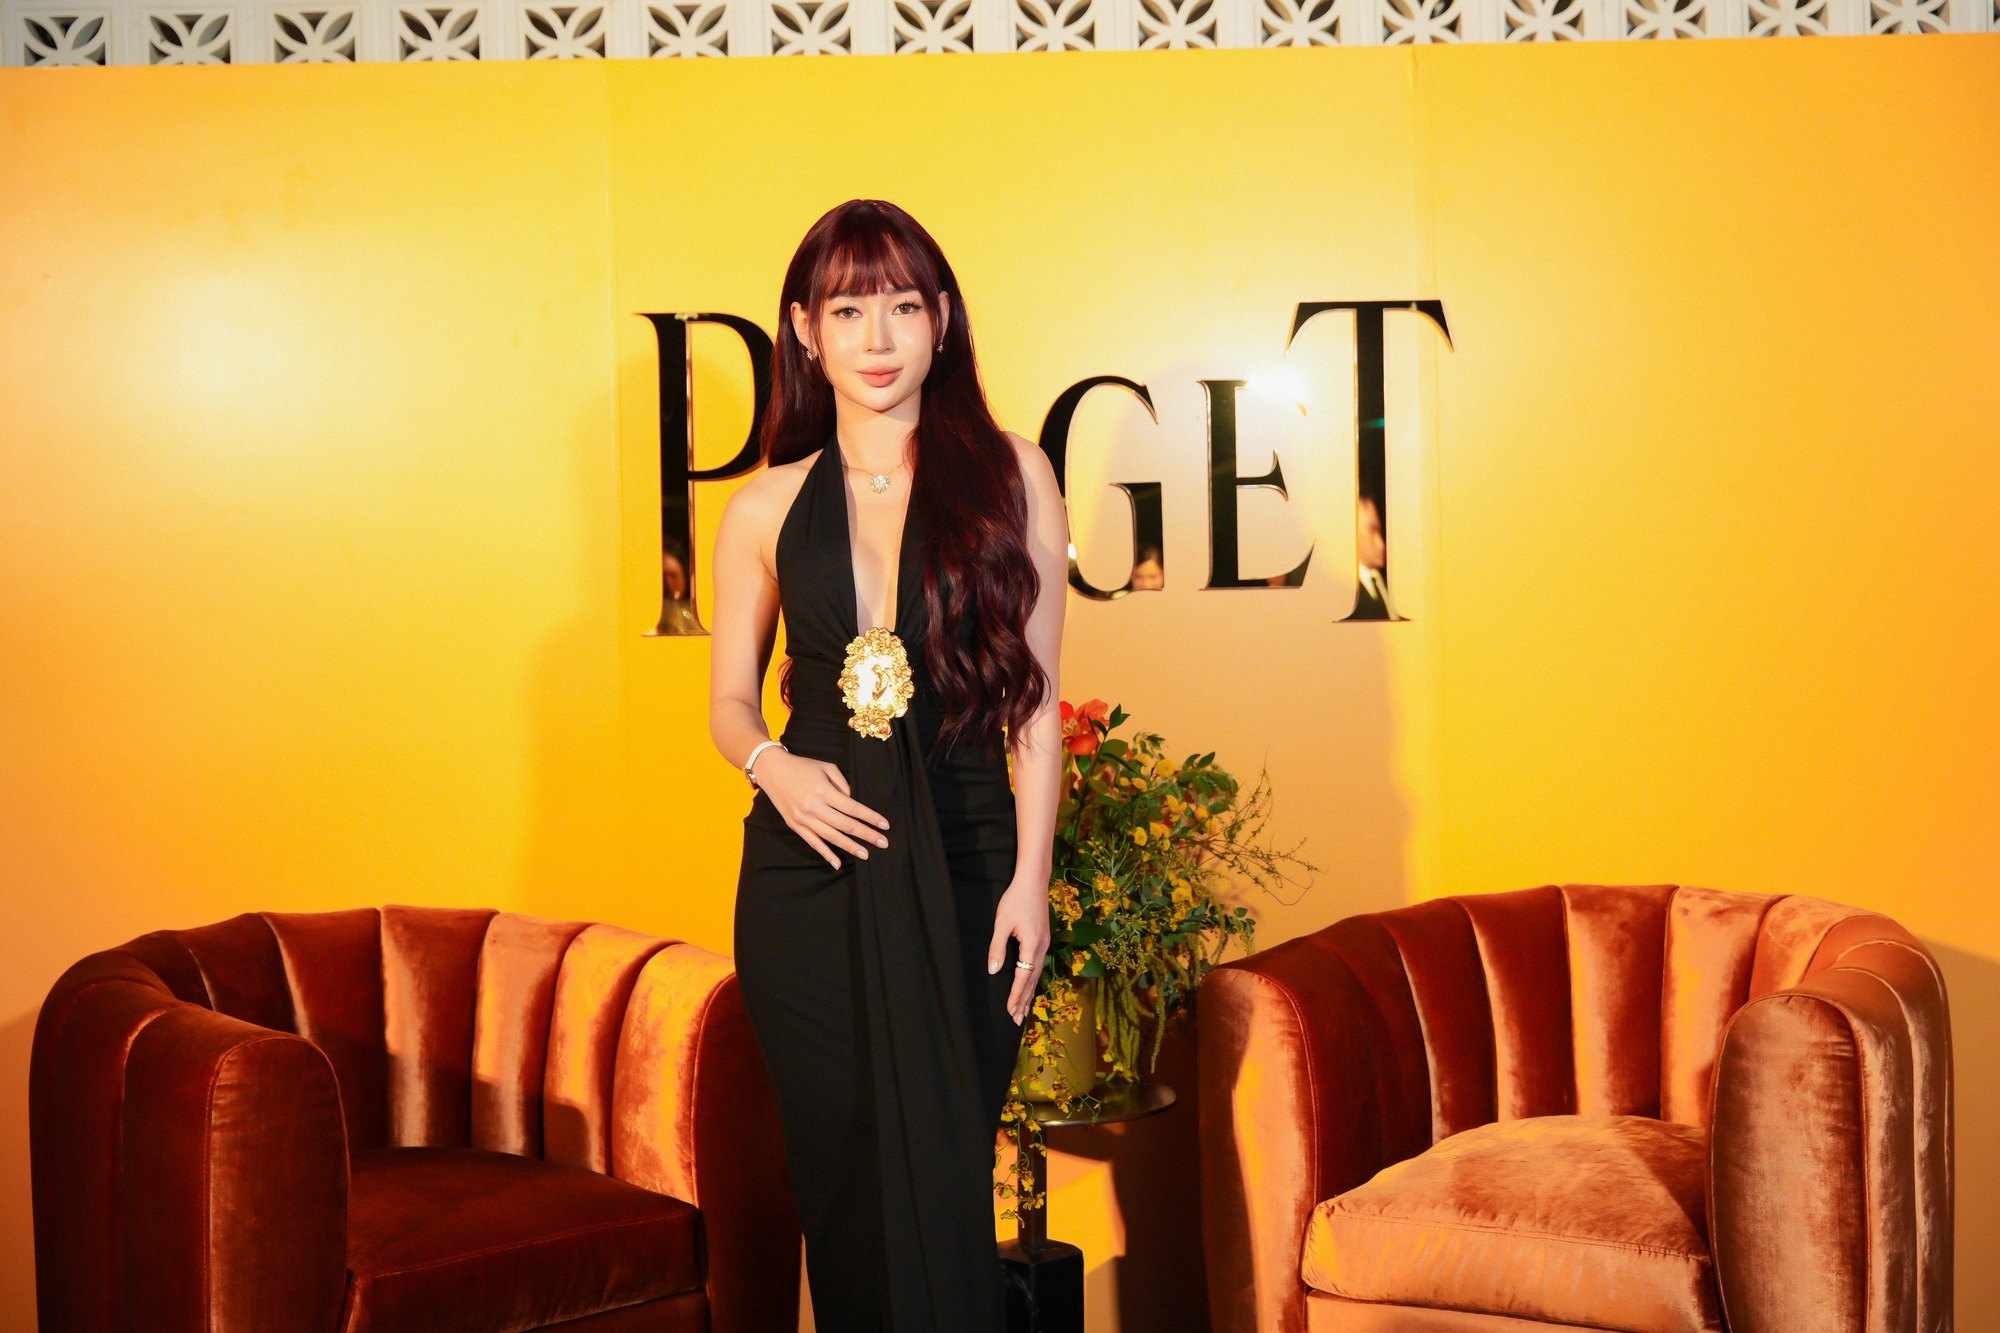 Đại hội mỹ nhân quy tụ tại sự kiện Piaget: Loạt trang sức lấp lánh, xa xỉ chiếm trọn spotlight - Ảnh 7.